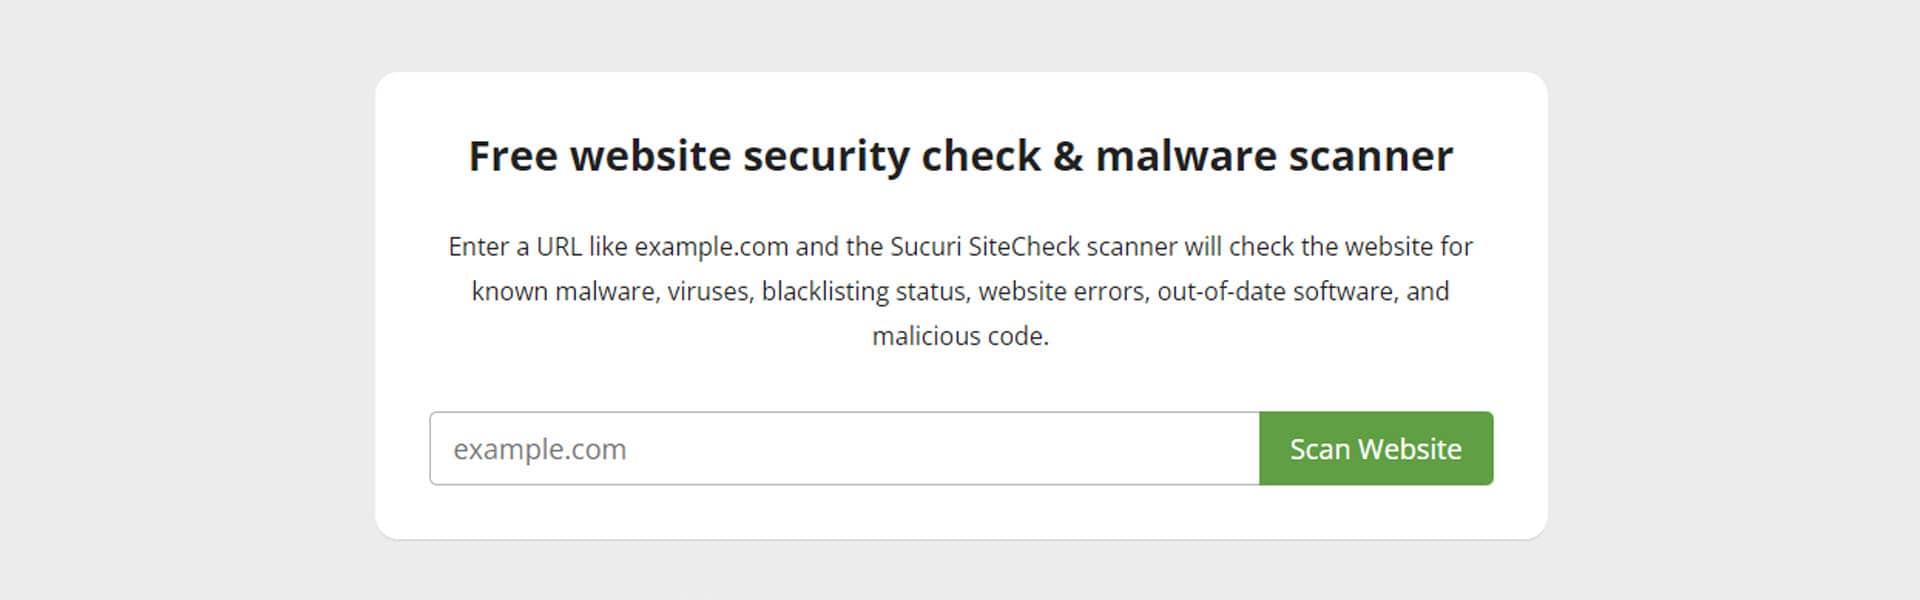 10 strumenti gratuiti online per la scansione di vulnerabilità e malware di sicurezza del sito web - Italy Swag  agenzia web, grafica e social a Bari